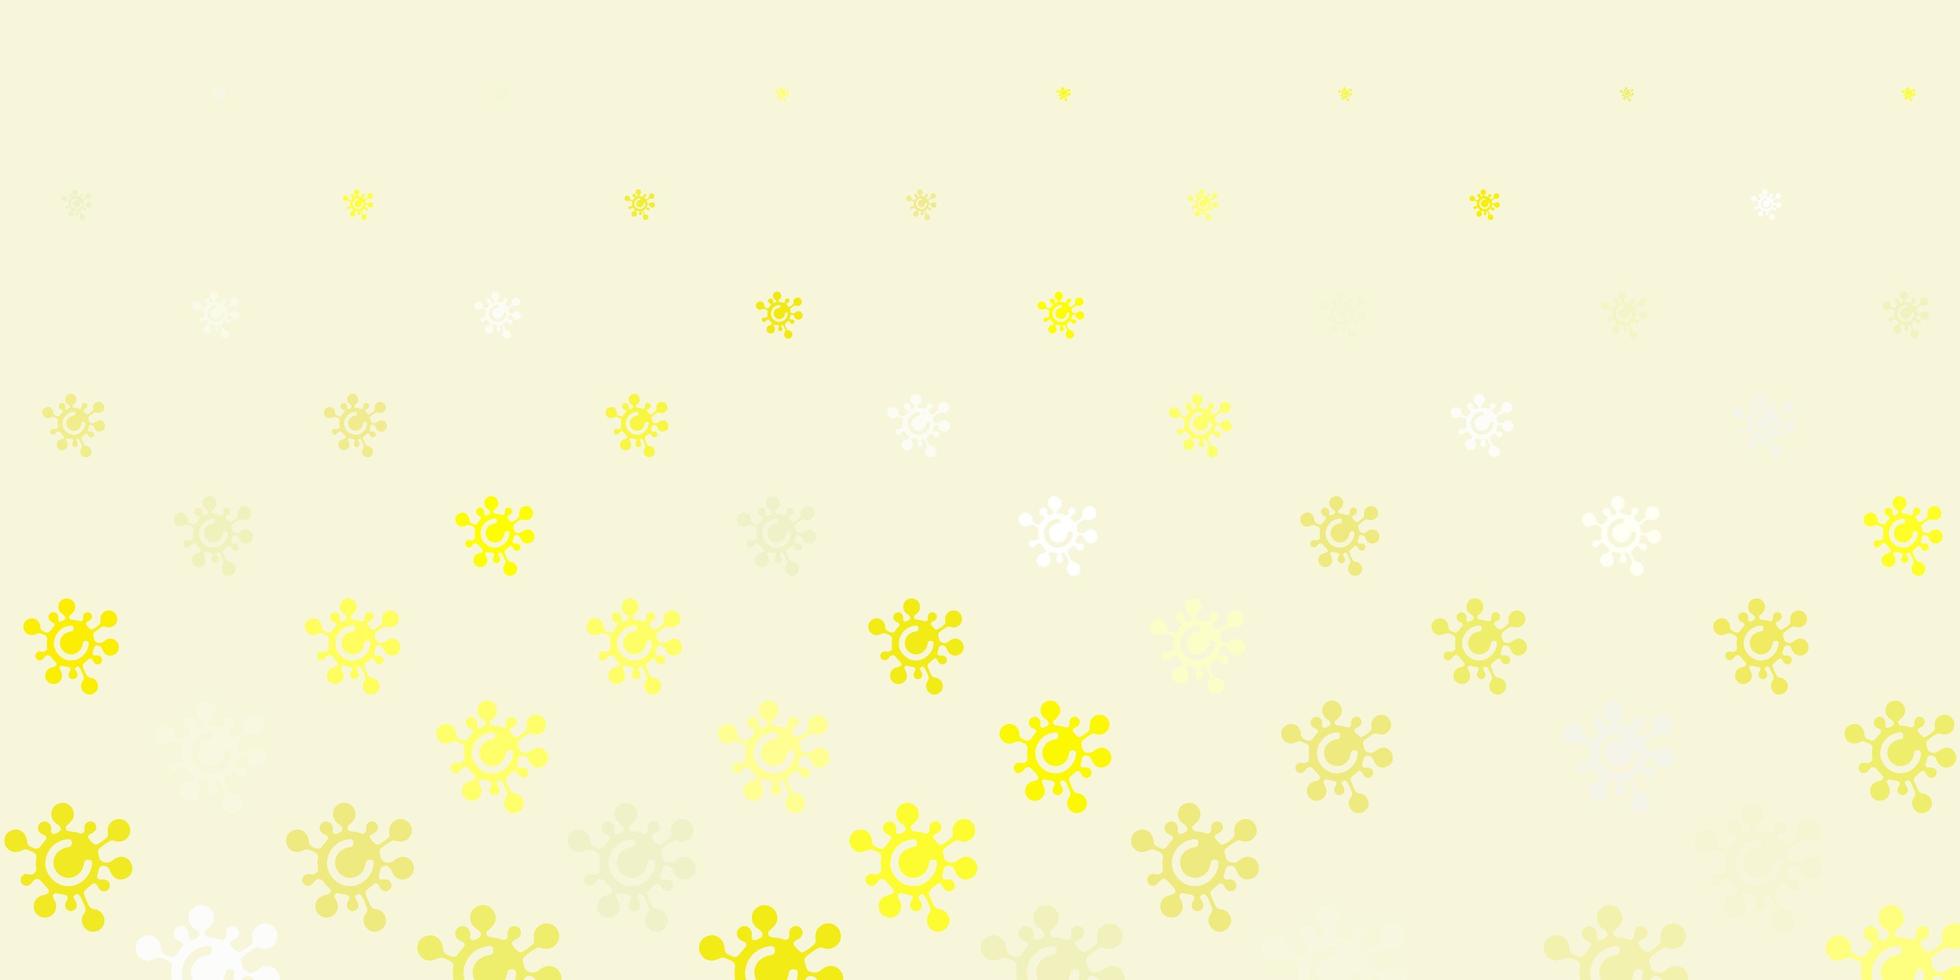 sfondo vettoriale giallo chiaro con simboli di virus